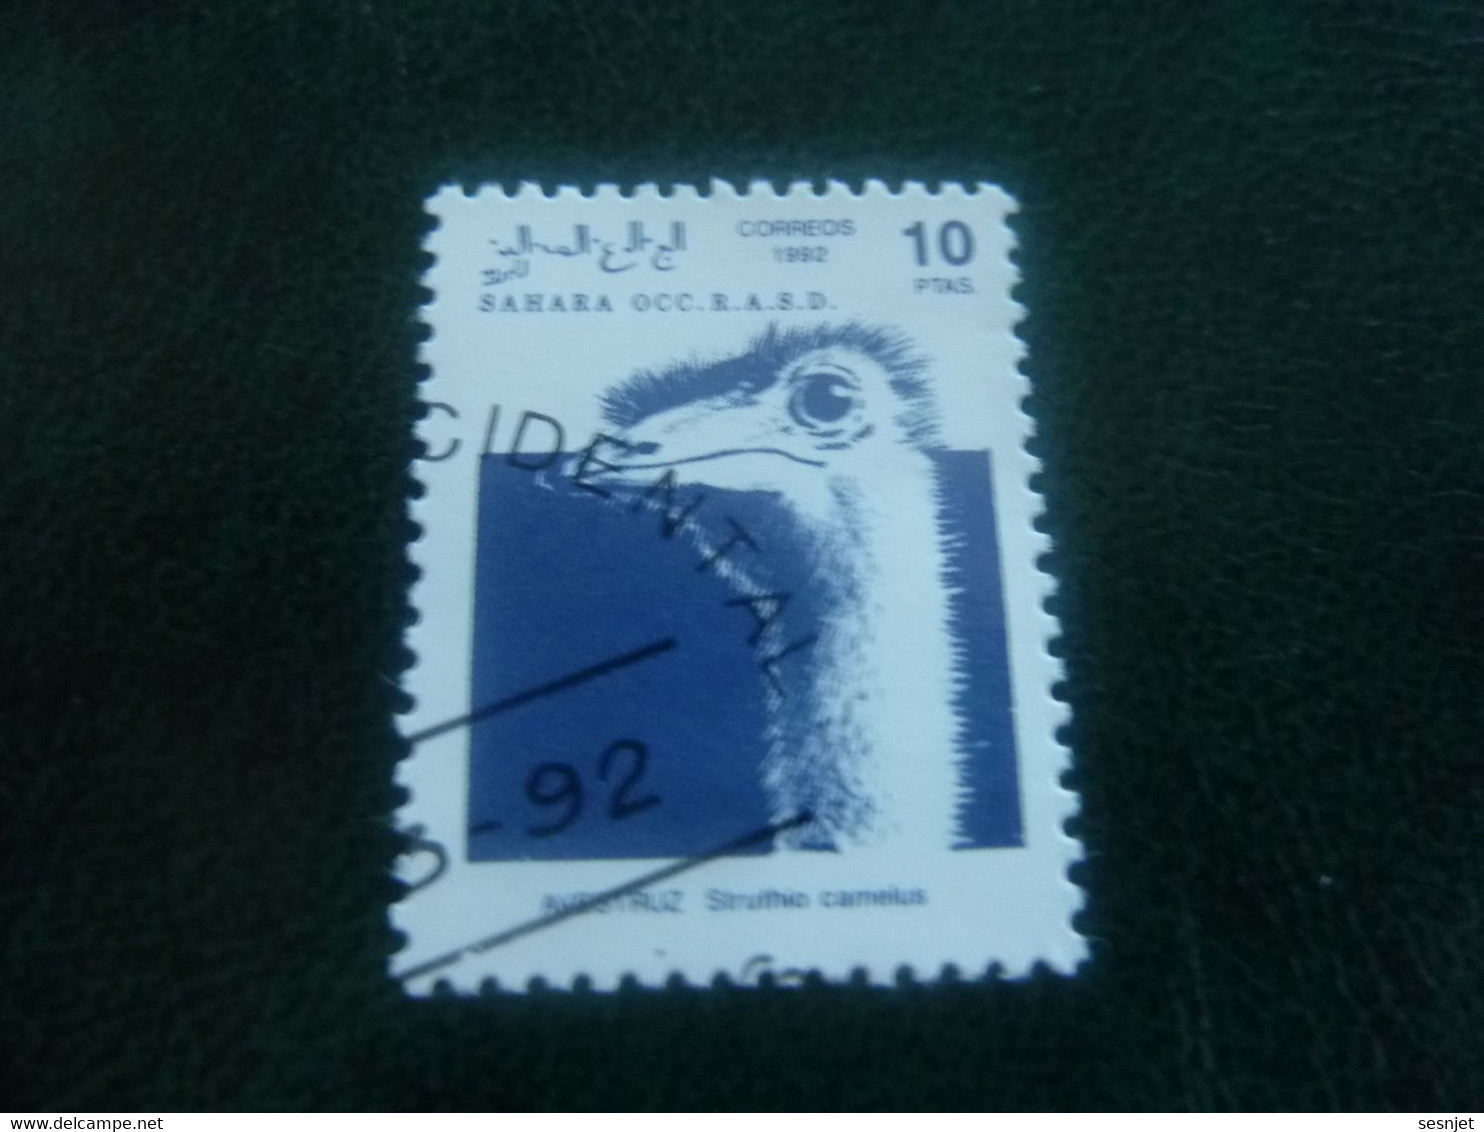 Sahara Occ R.a.sd.d. - Autruche - Val 10 Ptas - Bleu - Oblitéré - Année 1992 - - Avestruces